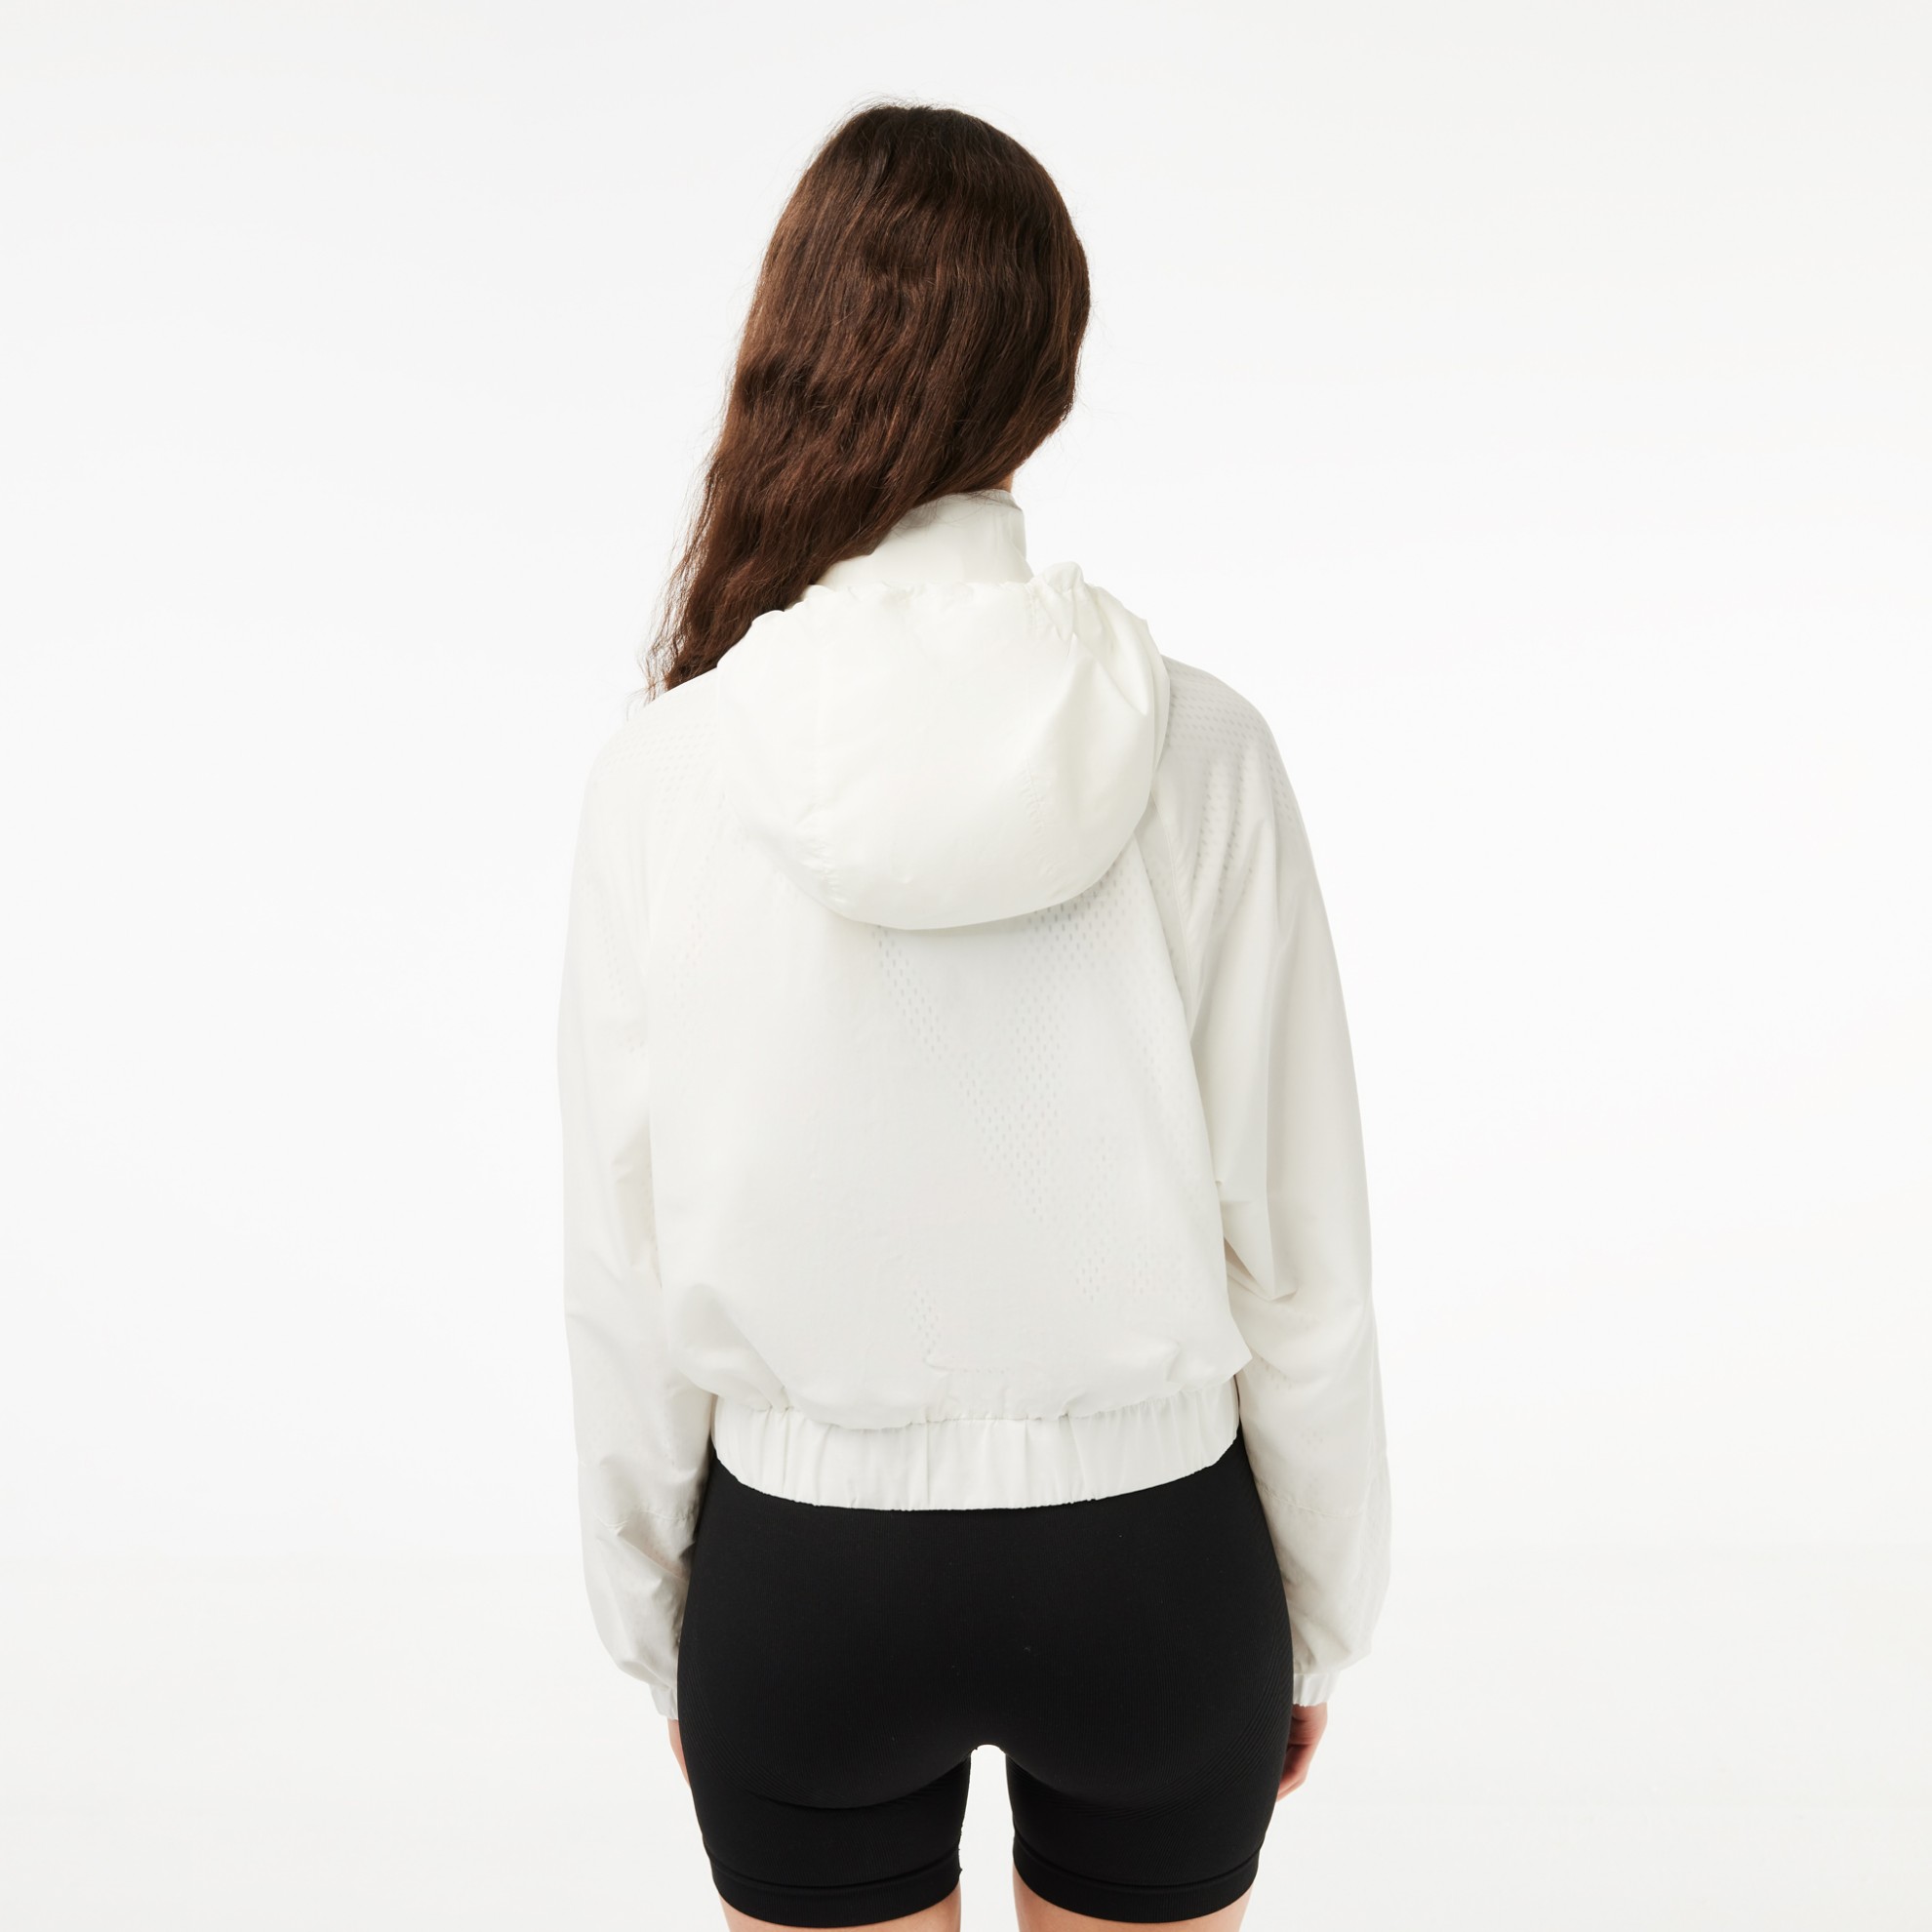 Εικόνα της Γυναικείο Zipped Nylon Sportsuit Jacket με Κουκουλα